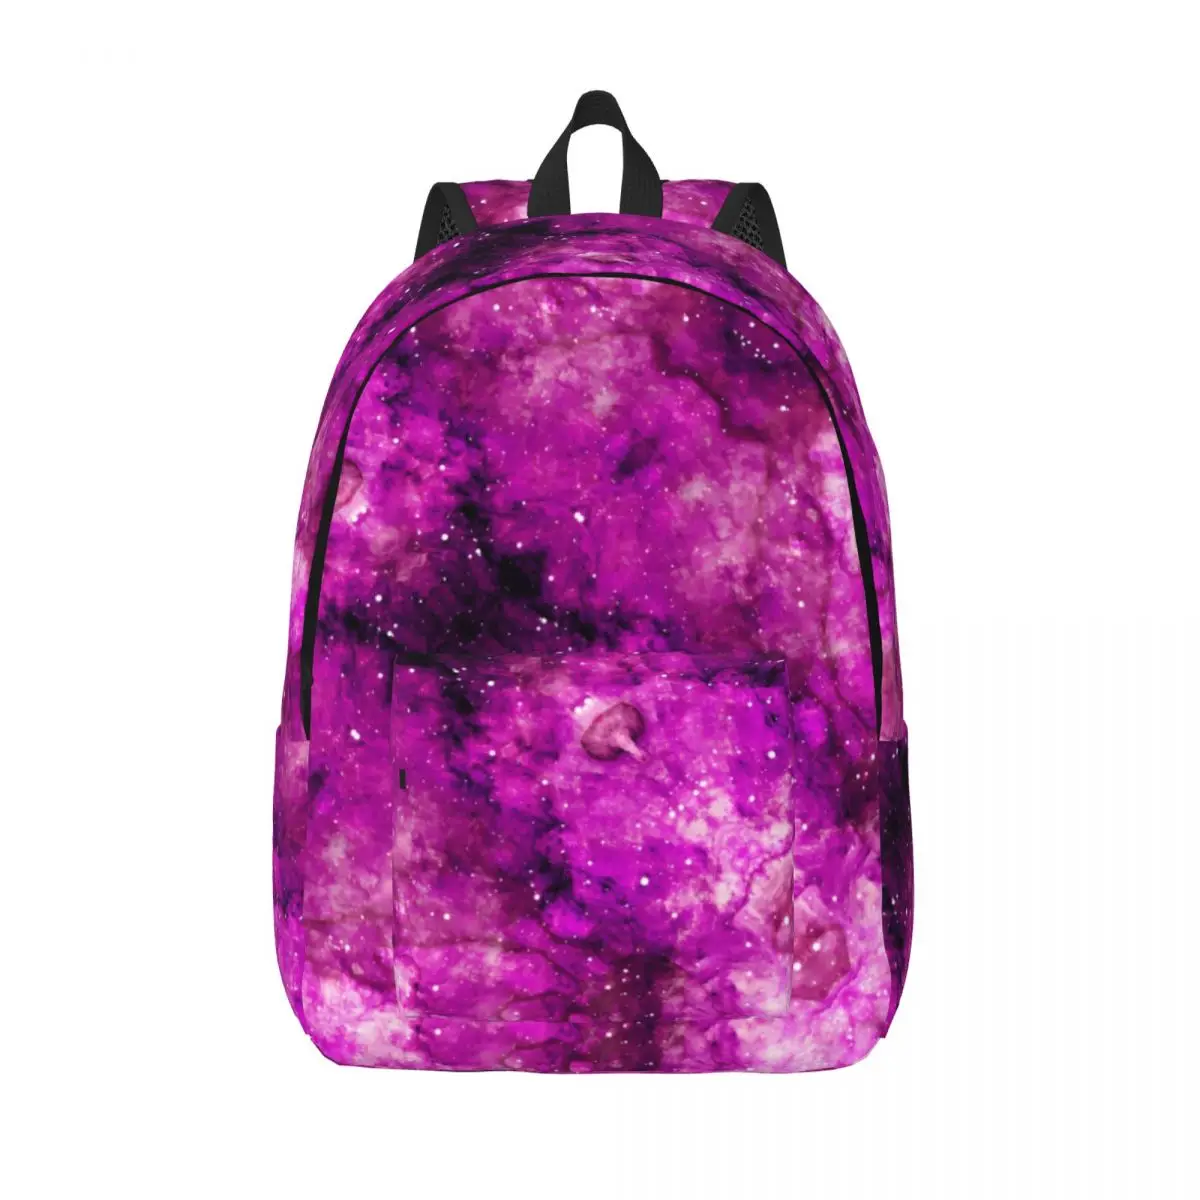 

Фиолетовый молодежный рюкзак с изображением космического пространства, прочные рюкзаки с абстрактным художественным принтом, милые школьные ранцы, уличный стиль, индивидуальный рюкзак